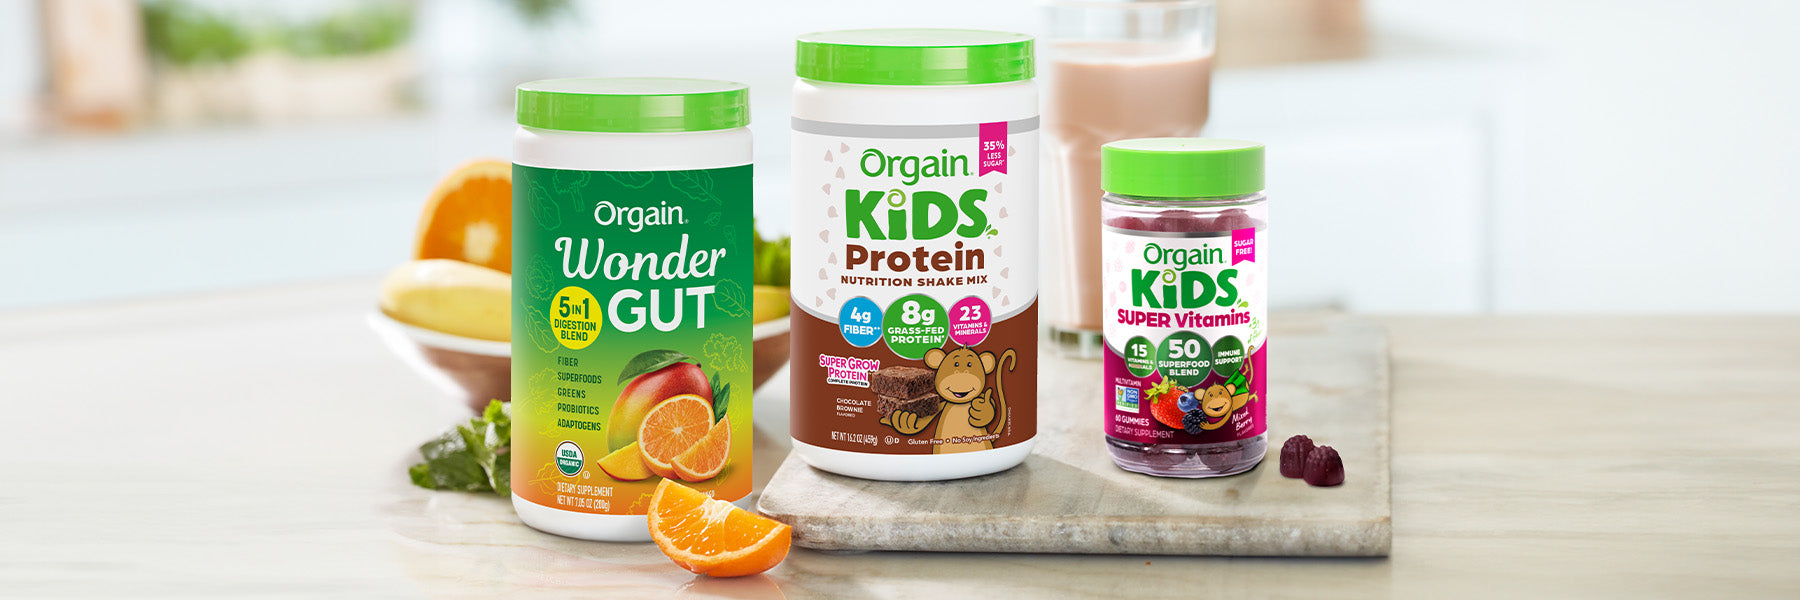 Orgain Wonder Gut, Kids Nutrition Shake Mix and Kids vitamin gummies